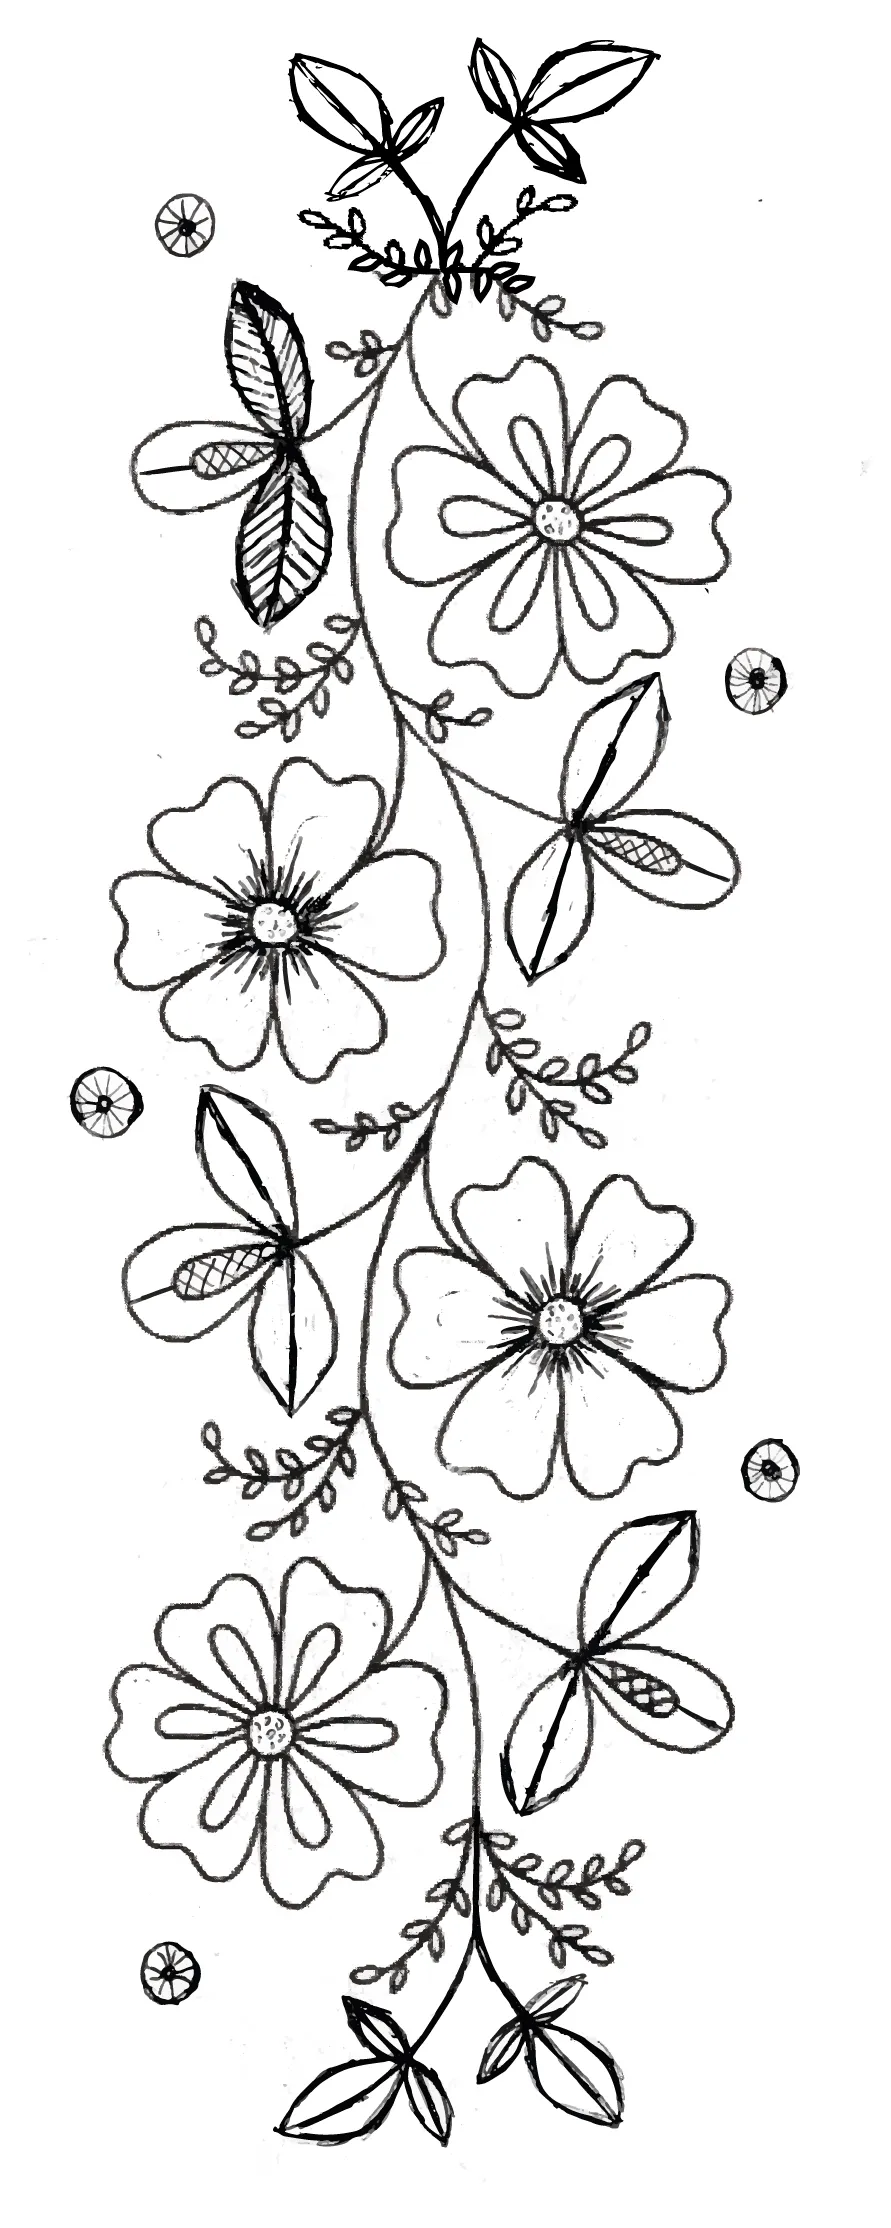 Dibujos Y Plantillas Para Imprimir: Dibujos De Flores Para Bordar 15 |  Flower drawing, Art decor diy, Embroidery patterns